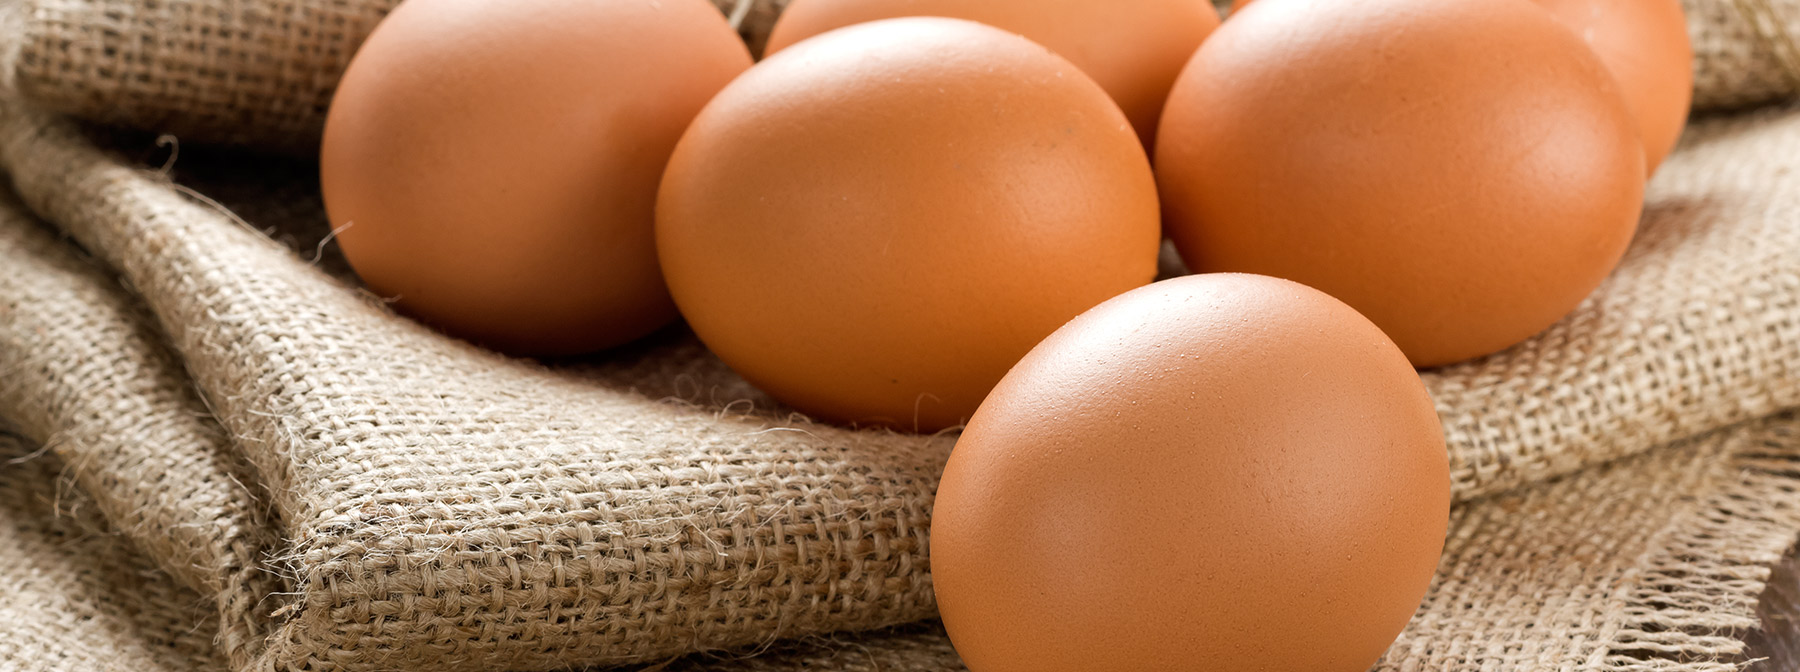 Είναι τα αυγά υγιεινά;